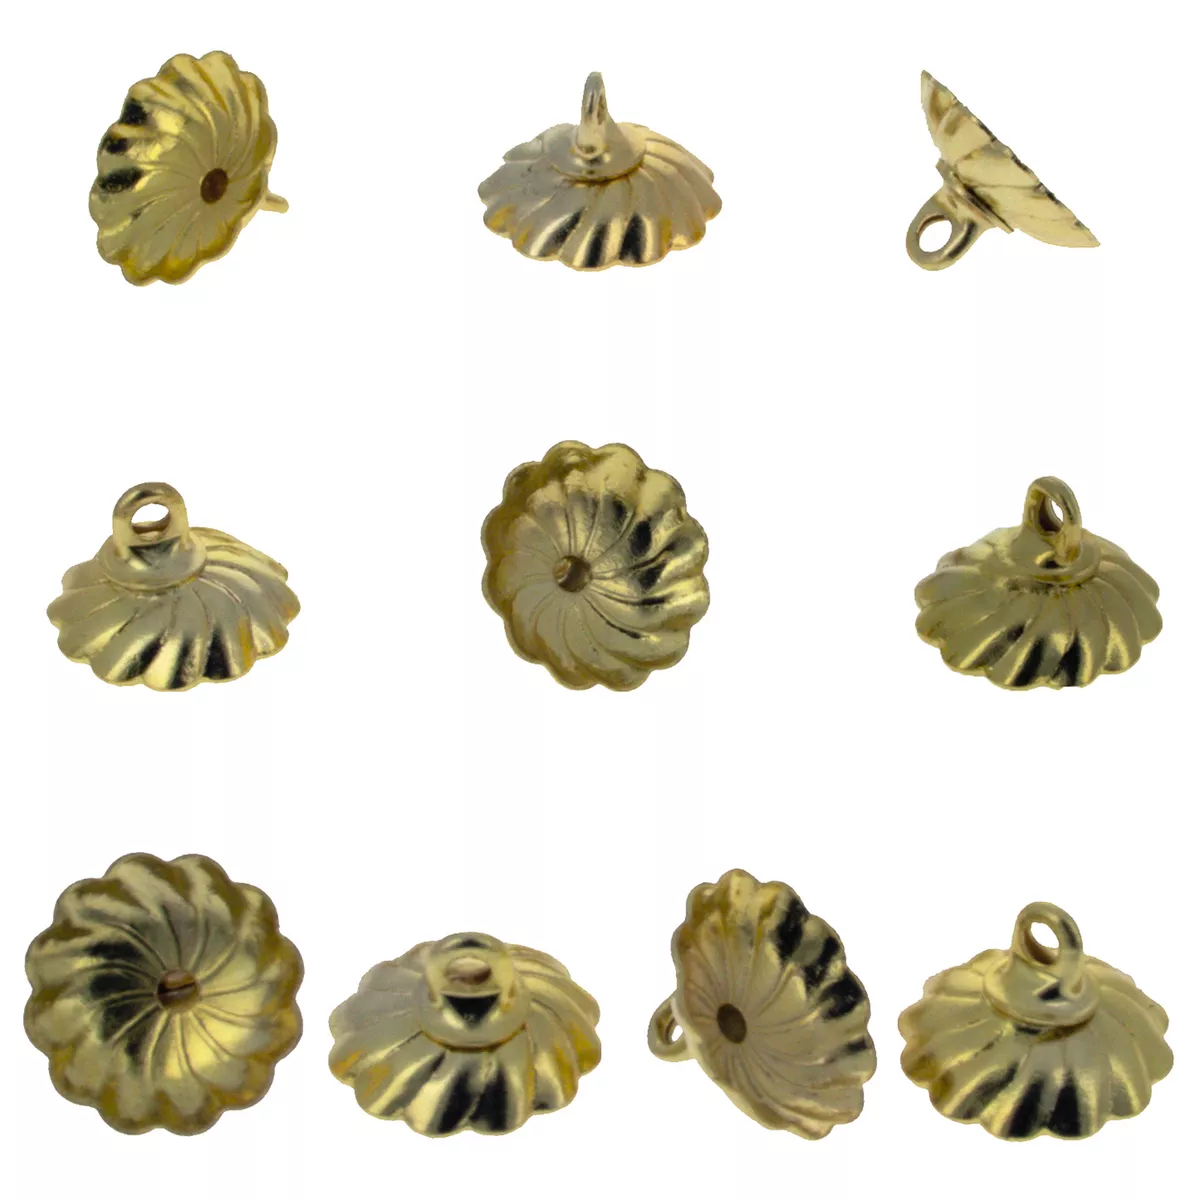 10 Medium Gold Tone Metal Ornament Caps - Egg Top Findings, End Caps